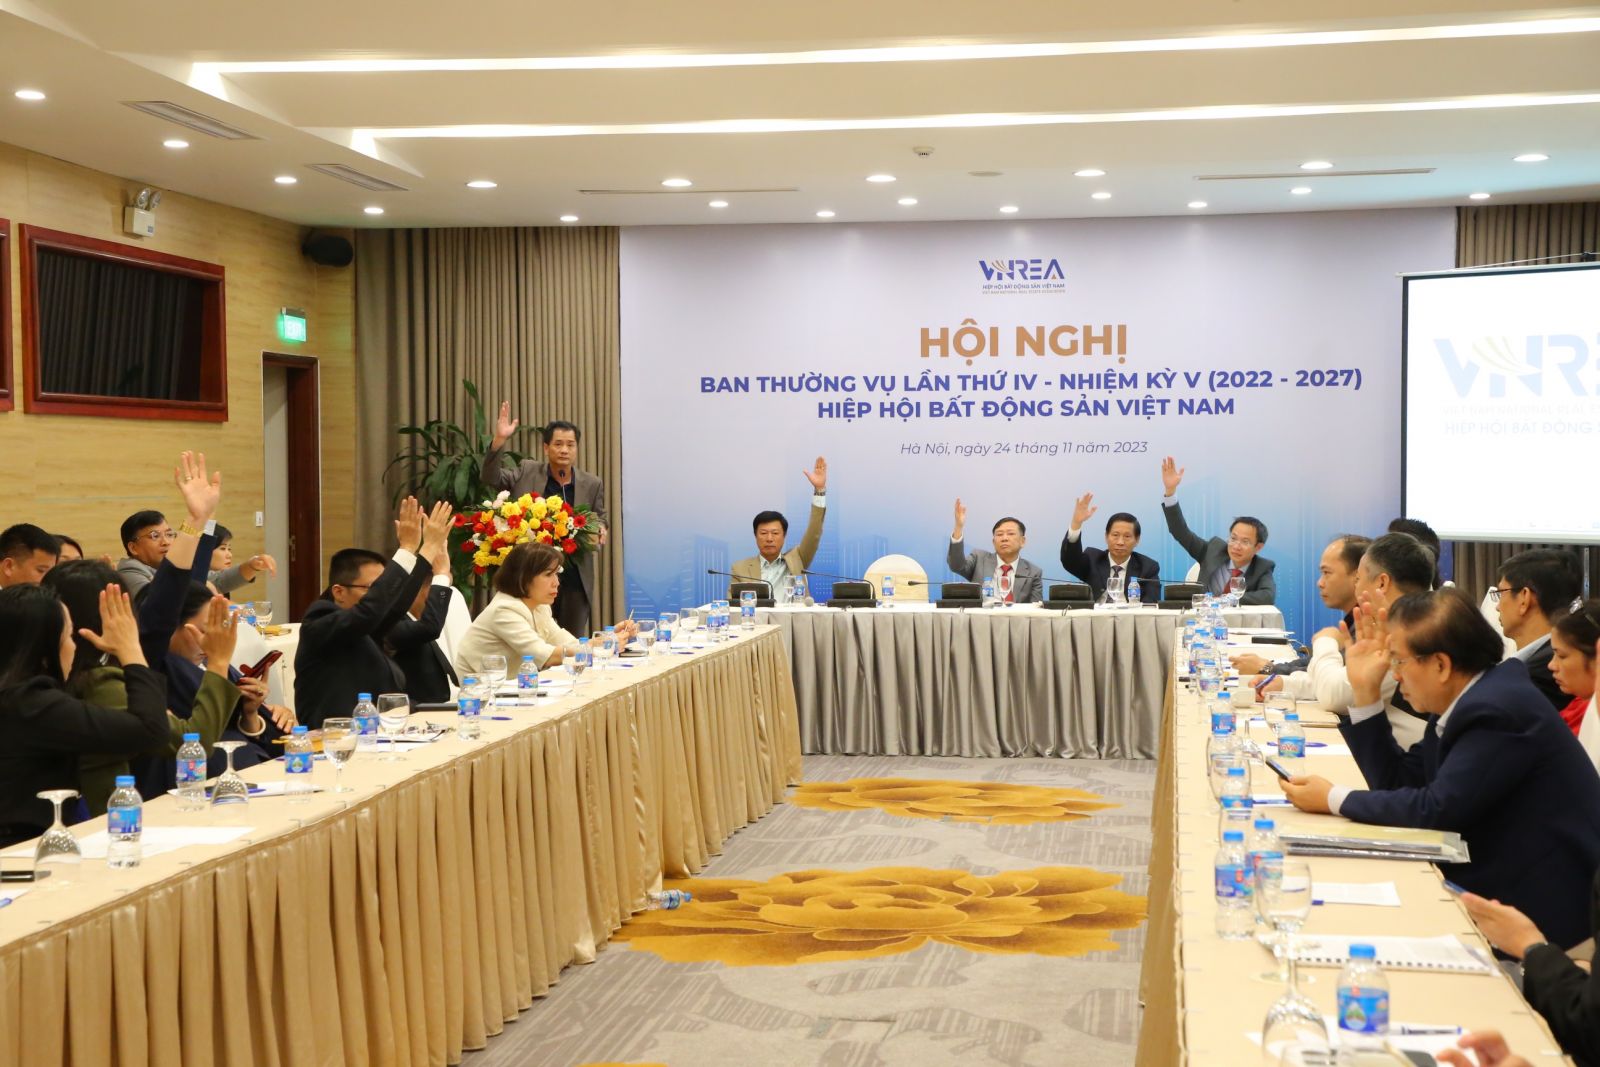 Hội nghị Ban Thường vụ Hiệp hội Bất động sản Việt Nam lần thứ IV nhiệm kỳ 2022 - 2027 - Ảnh 1.